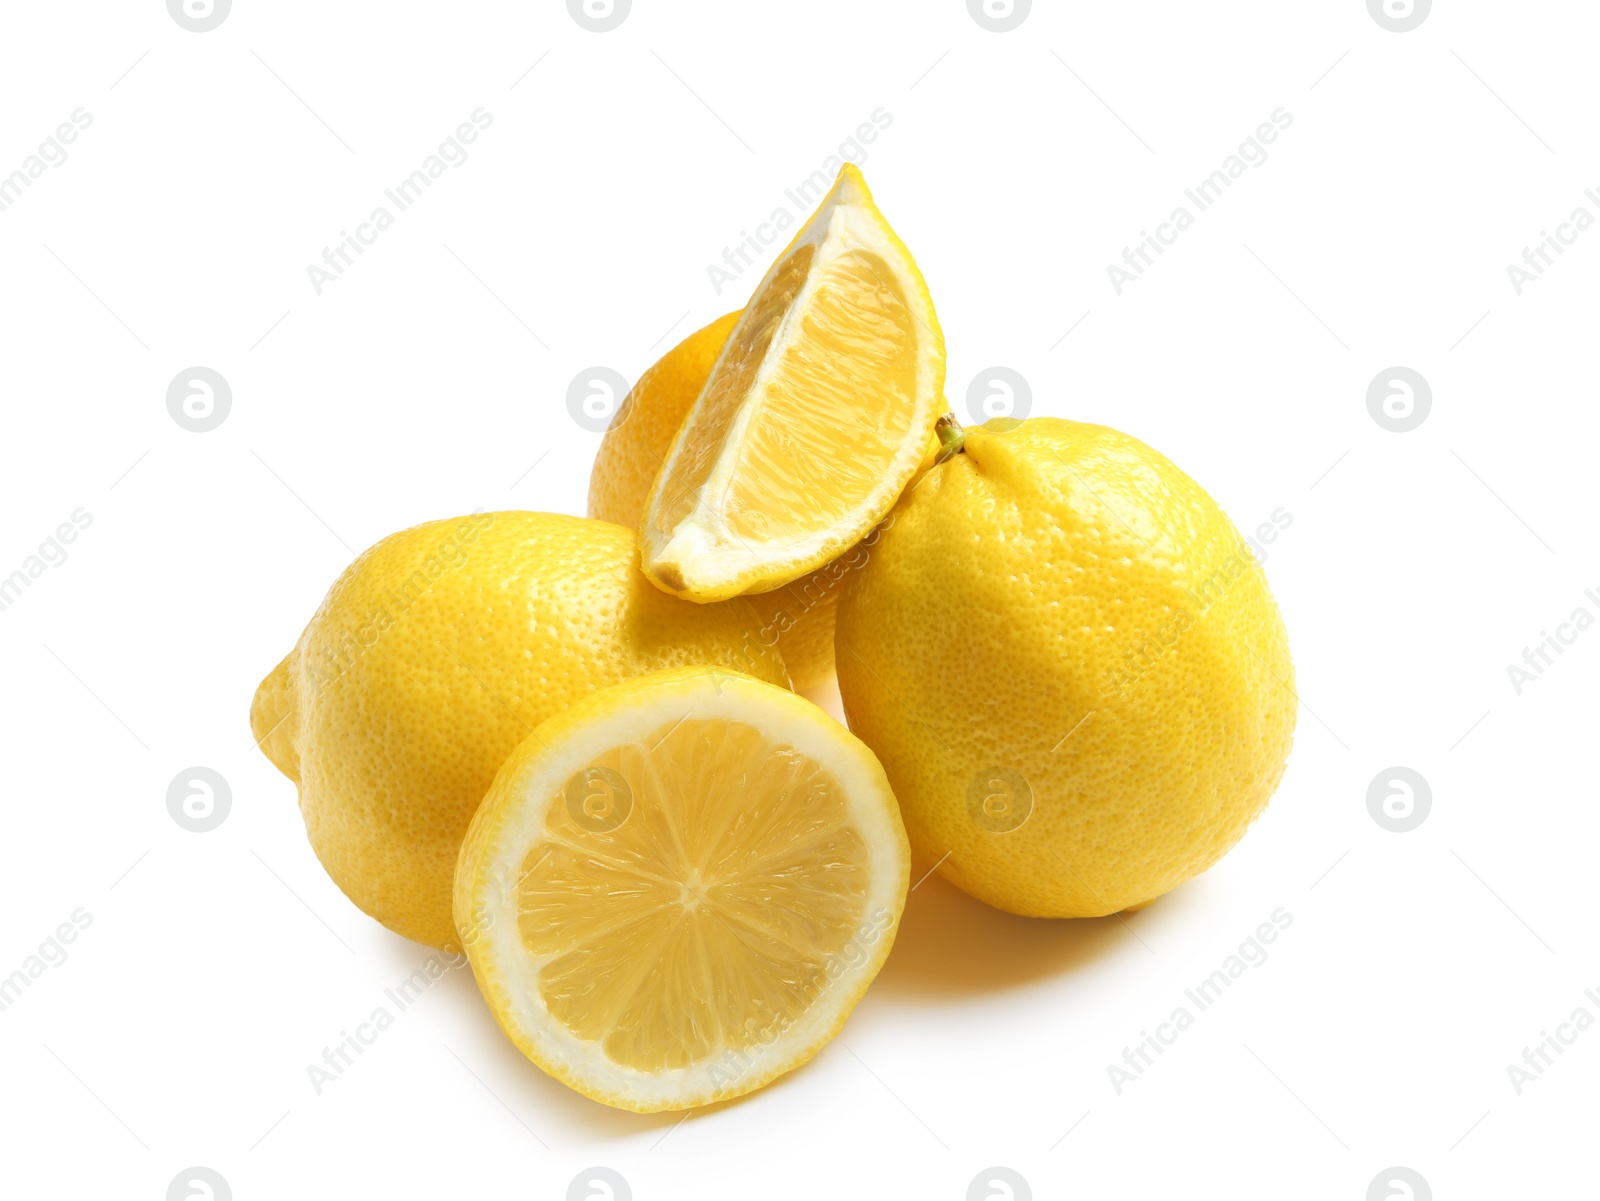 Photo of Ripe whole and sliced lemons on white background